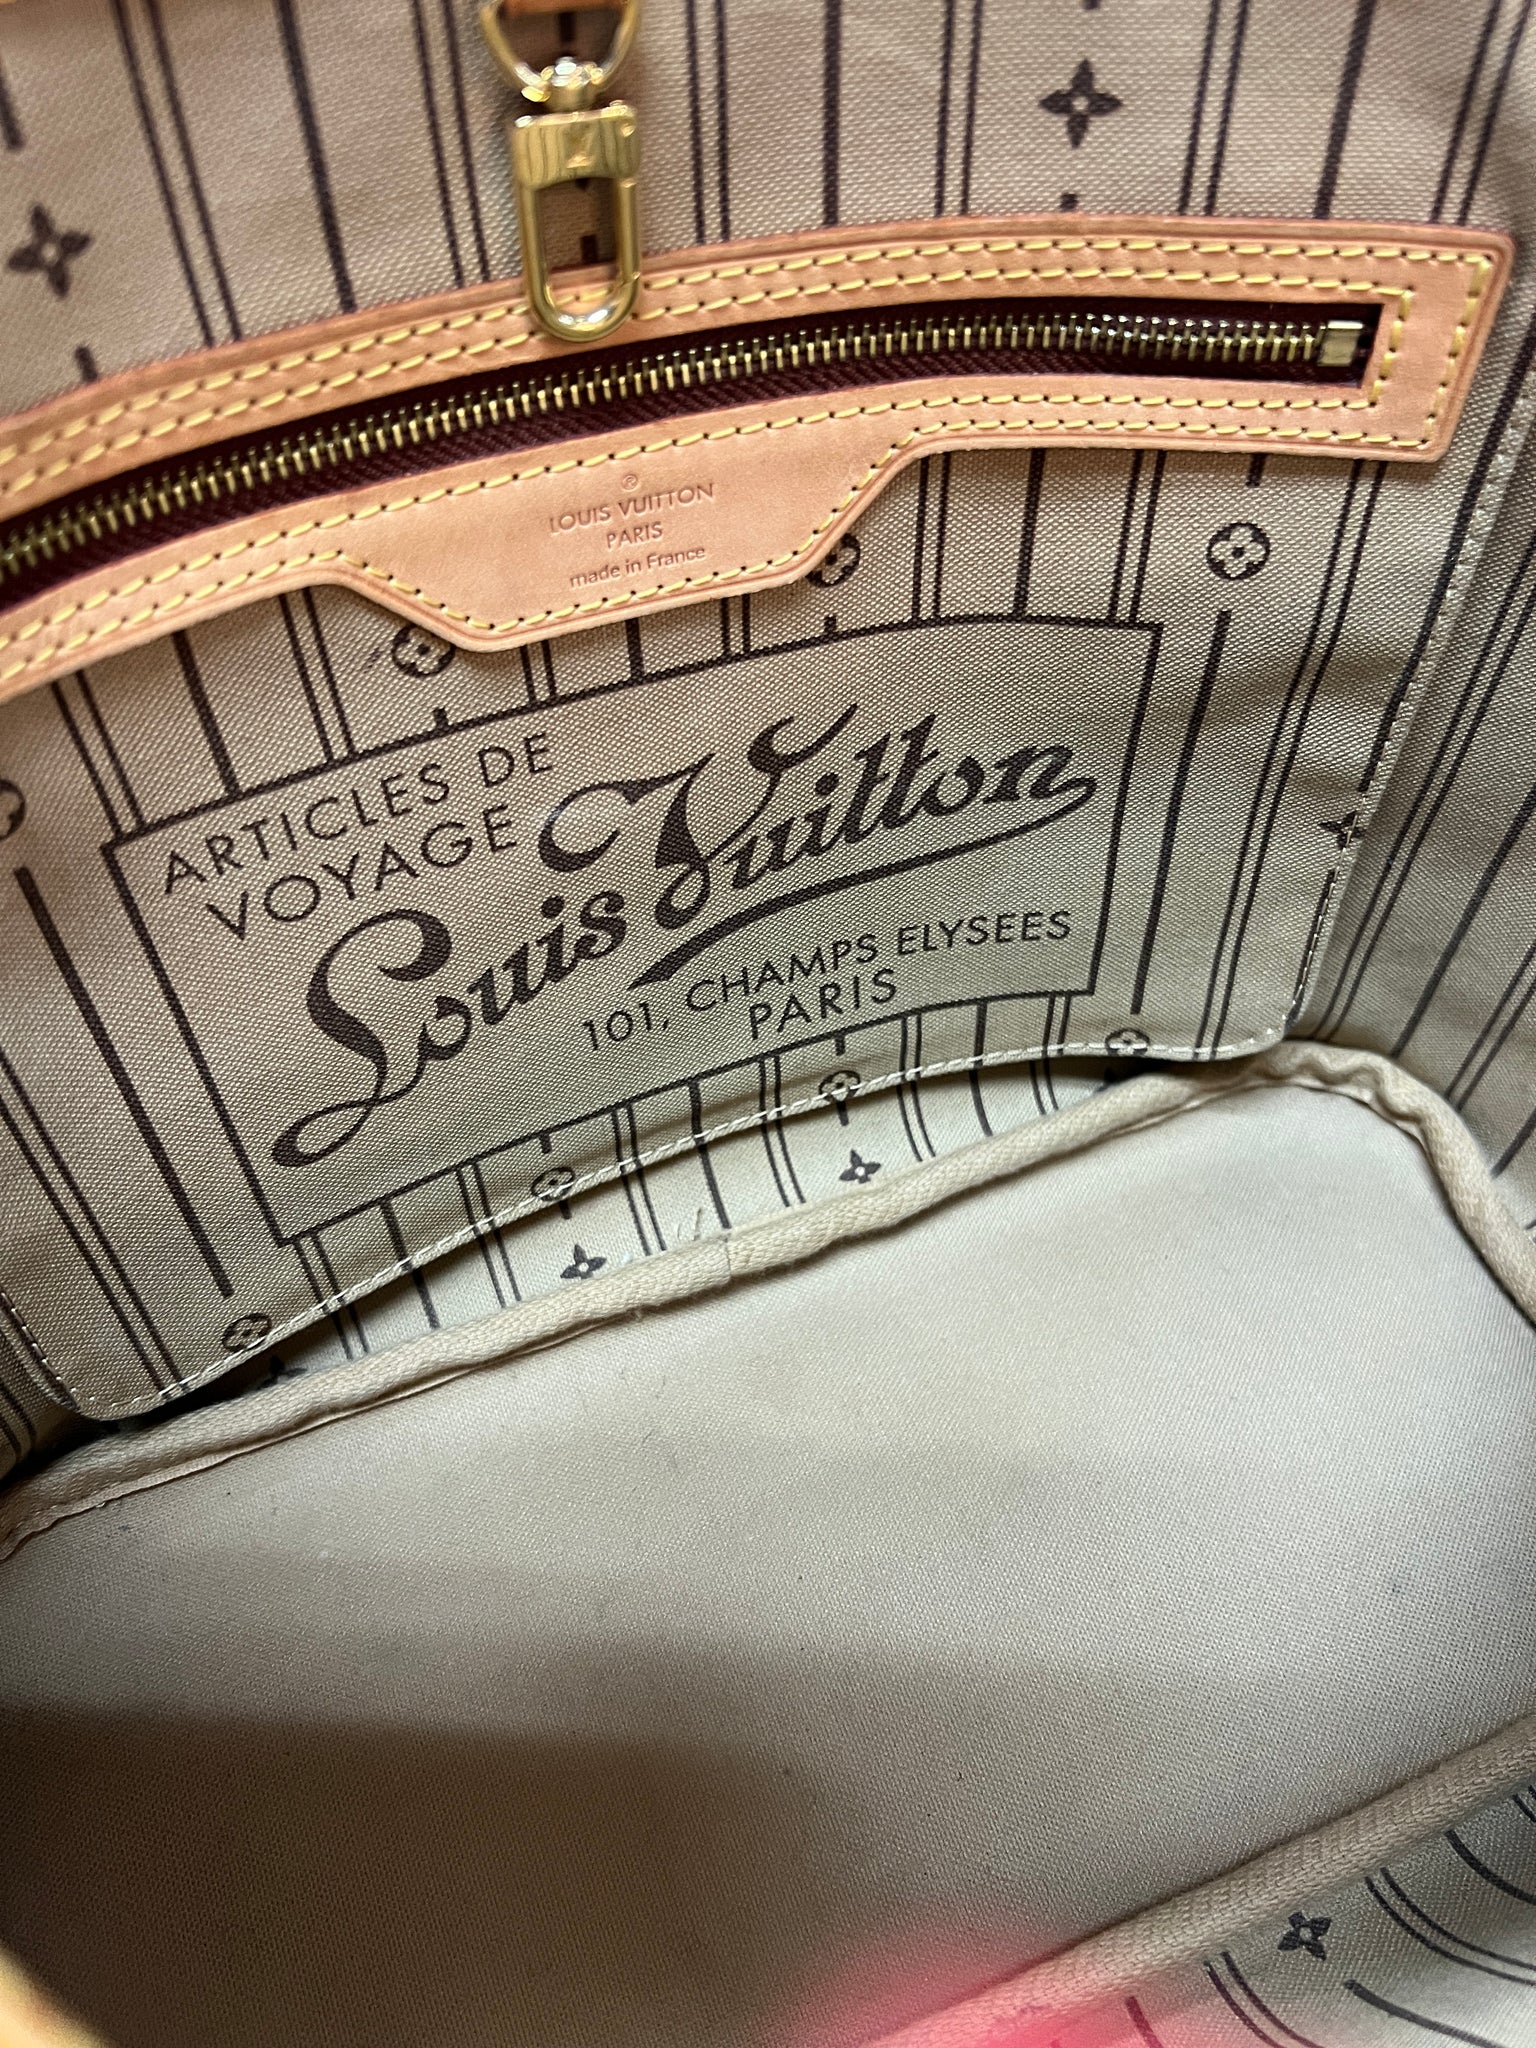 Louis Vuitton101 Champs Elysees Paris Handbag